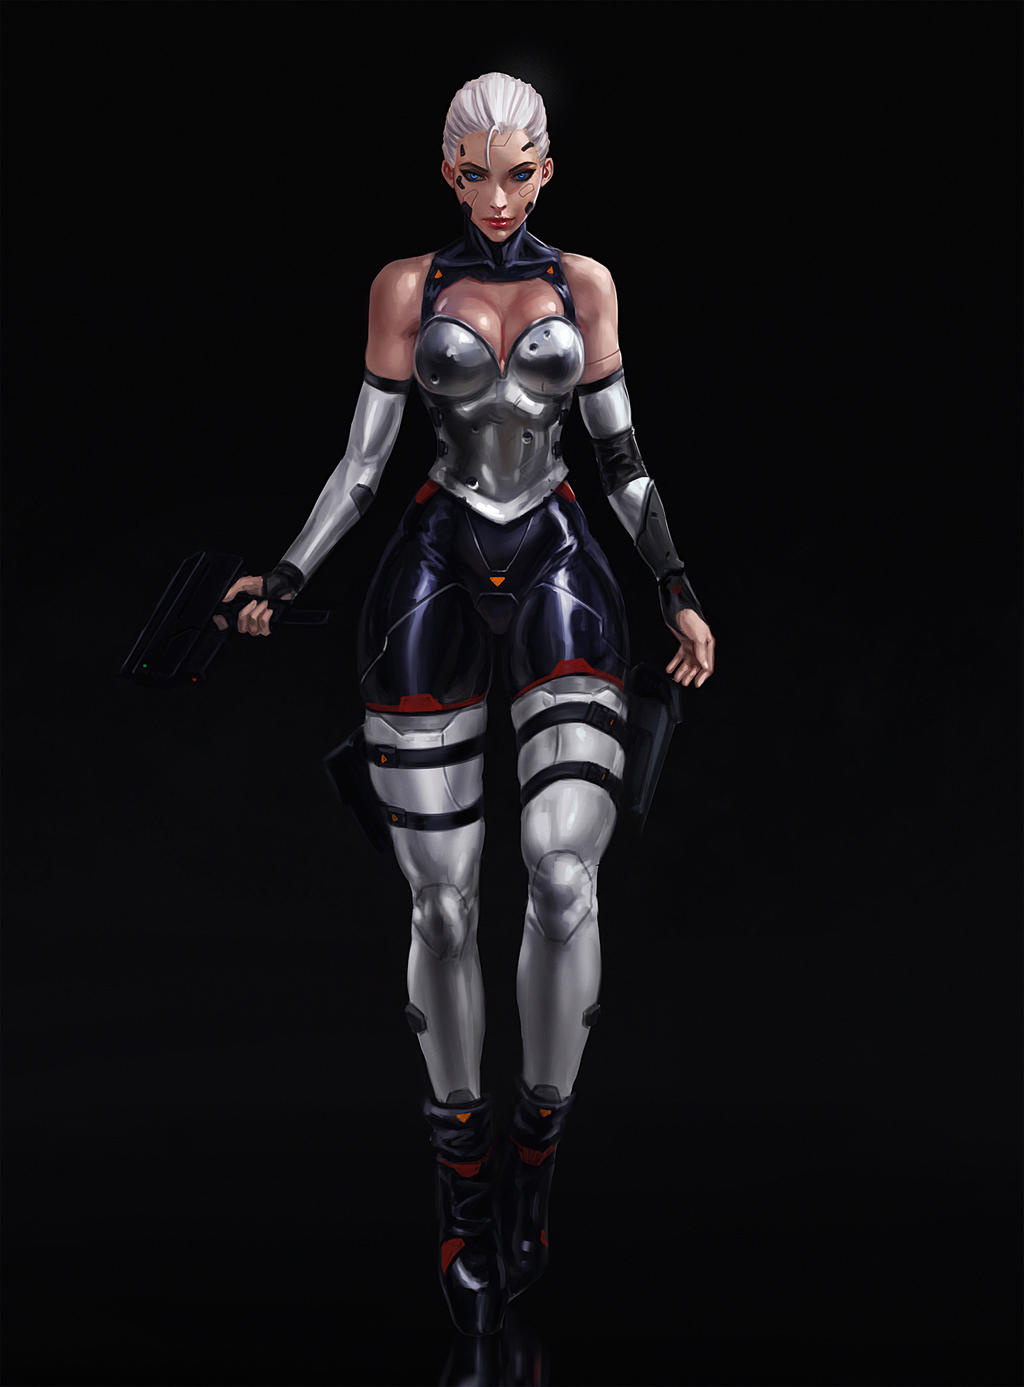 Cyberpunk Assassin by SalvadorTrakal Sex Pics Hd